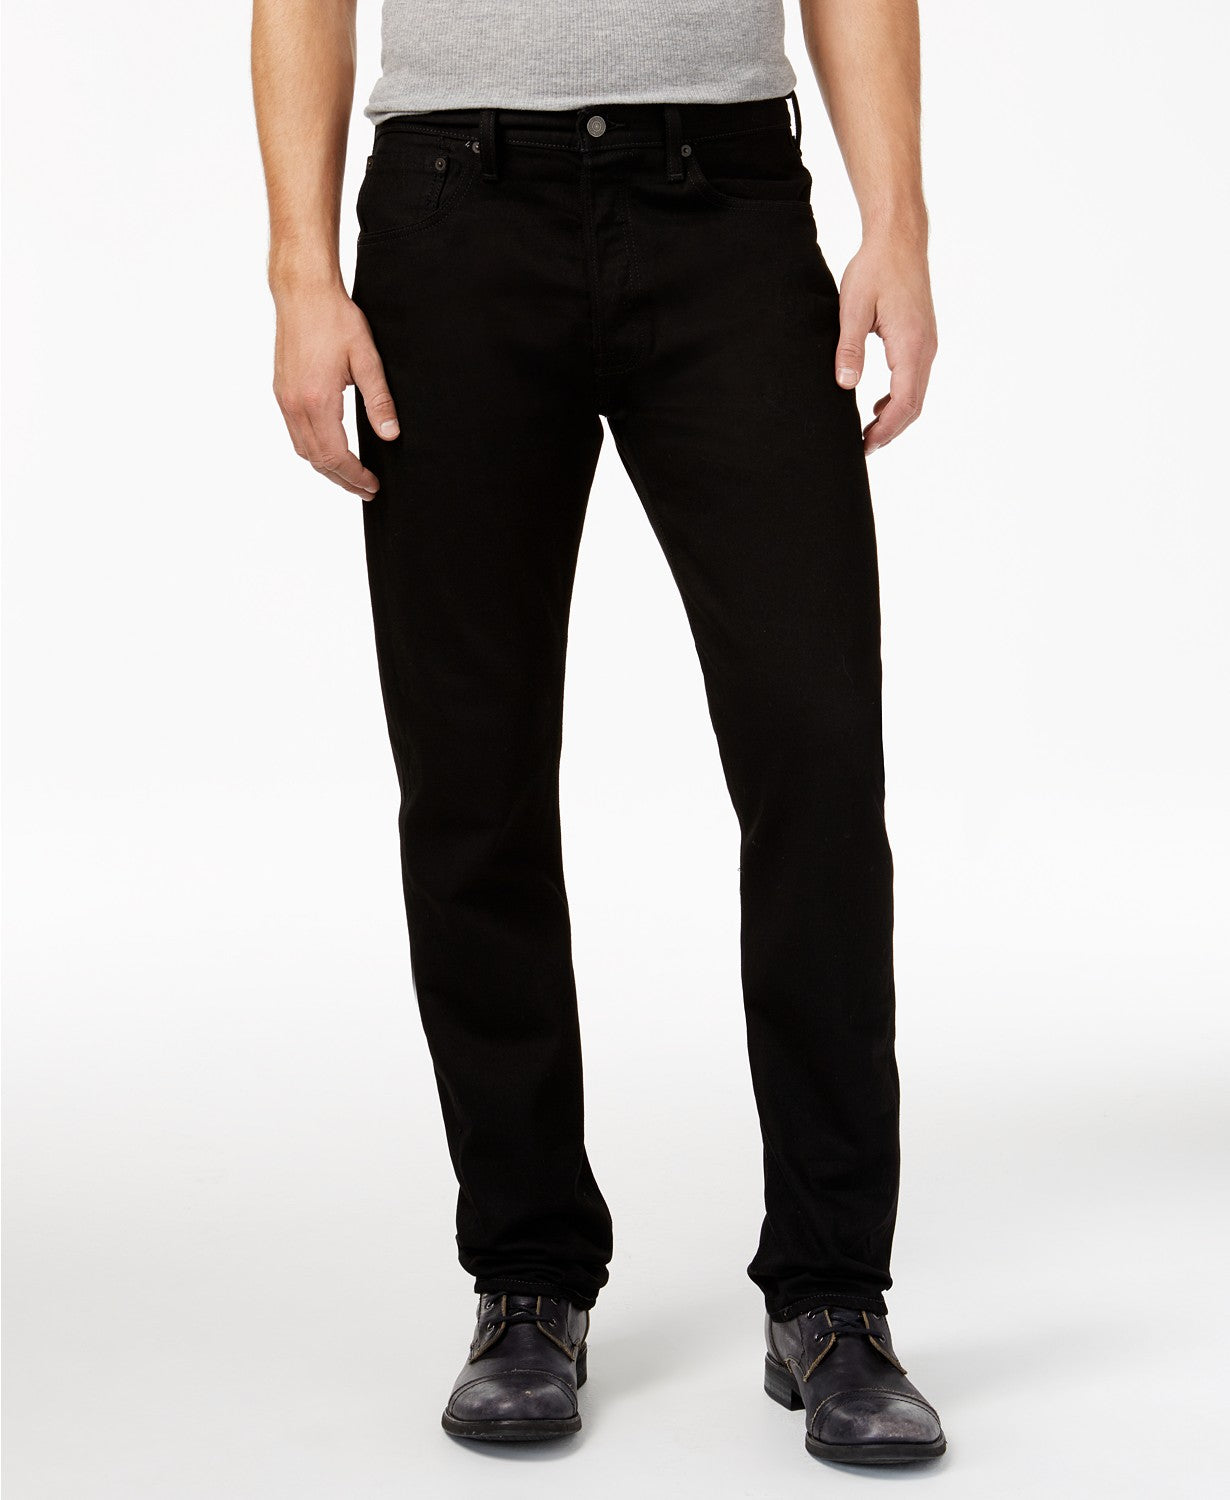 Men's Black 501 Original Fit Jean Button Fly - 00501-0660